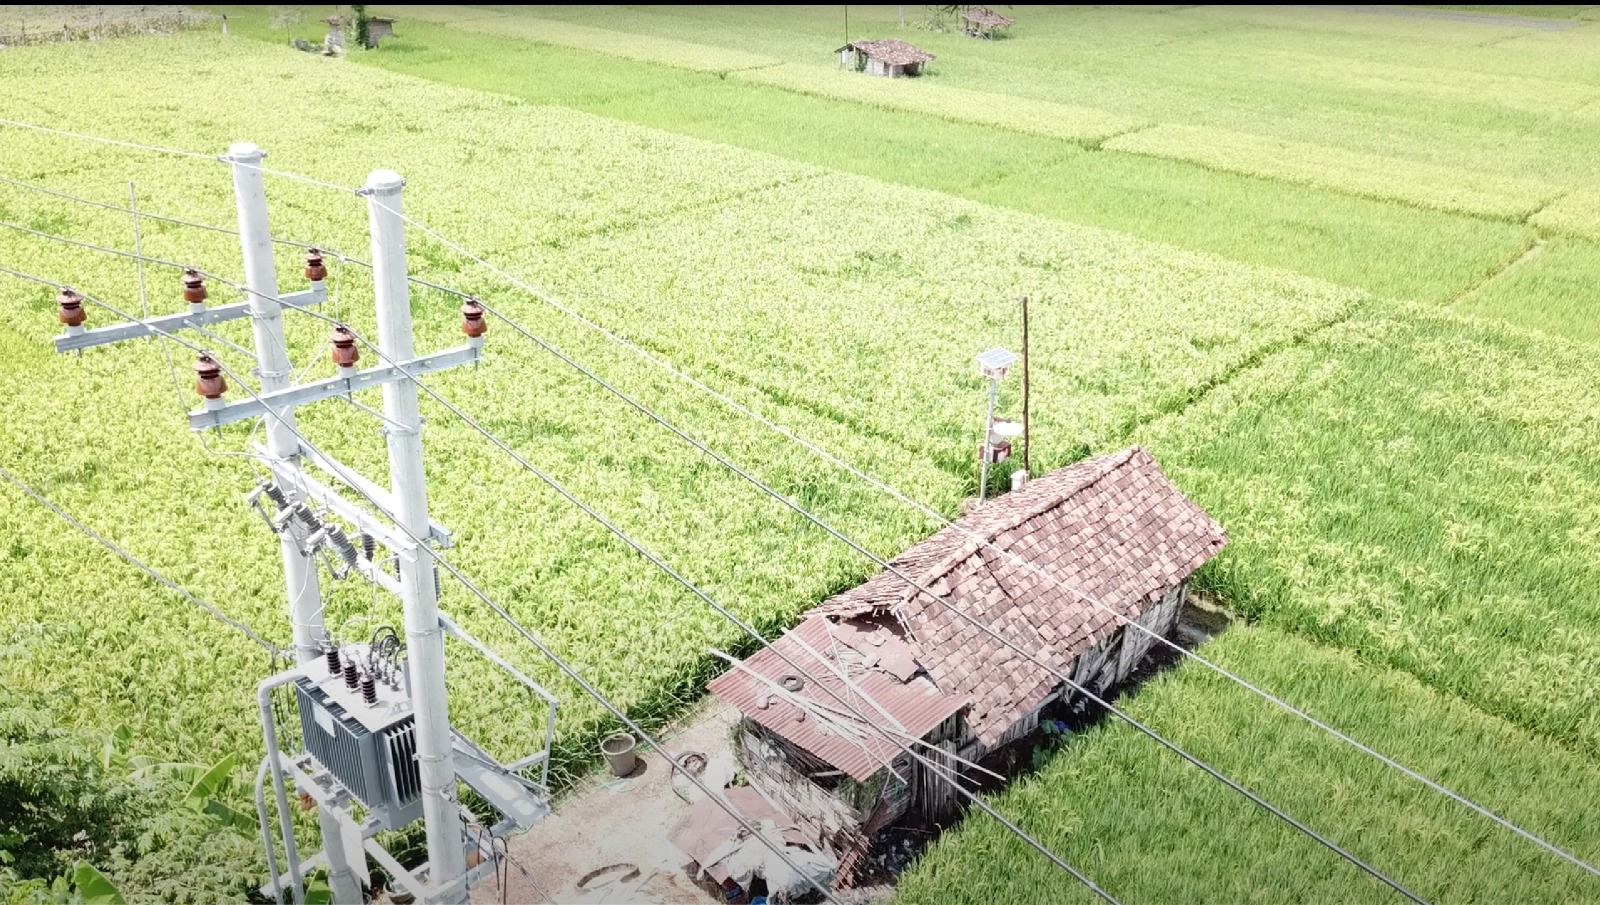 Tampilan Jaringan Tegangan Menengah (JTM) bertegangan 20 kilovolt (kV) yang membentang di areal persawahan Desa Sukorejo, Ponorogo, Jawa Timur.